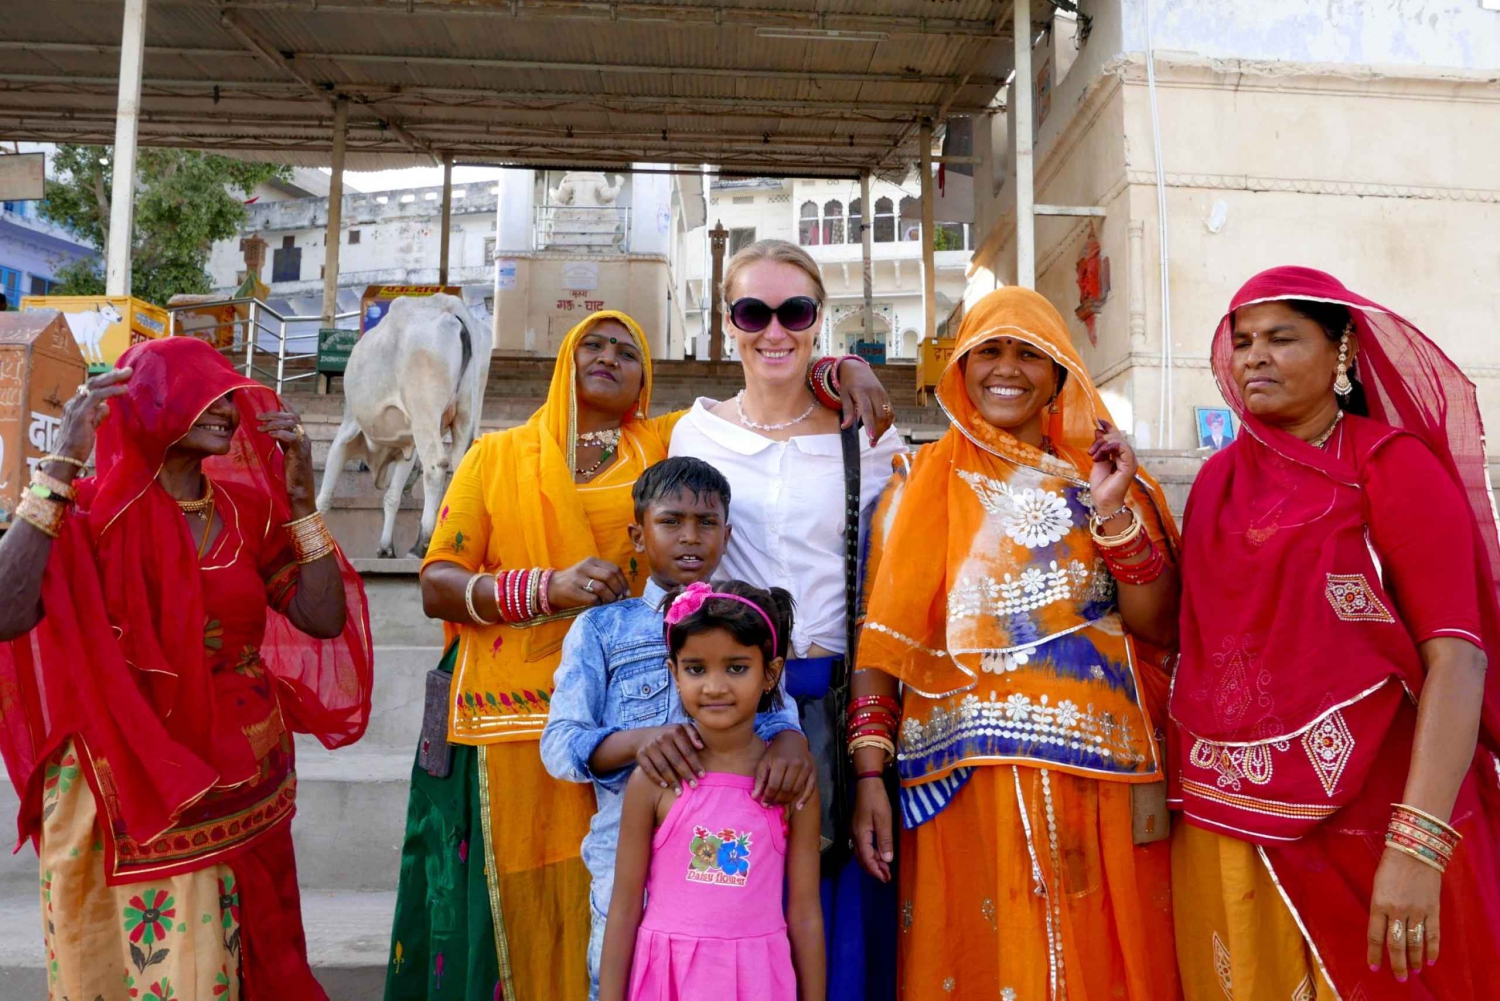 From Jaipur: Pushkar Self-Guided Day Trip